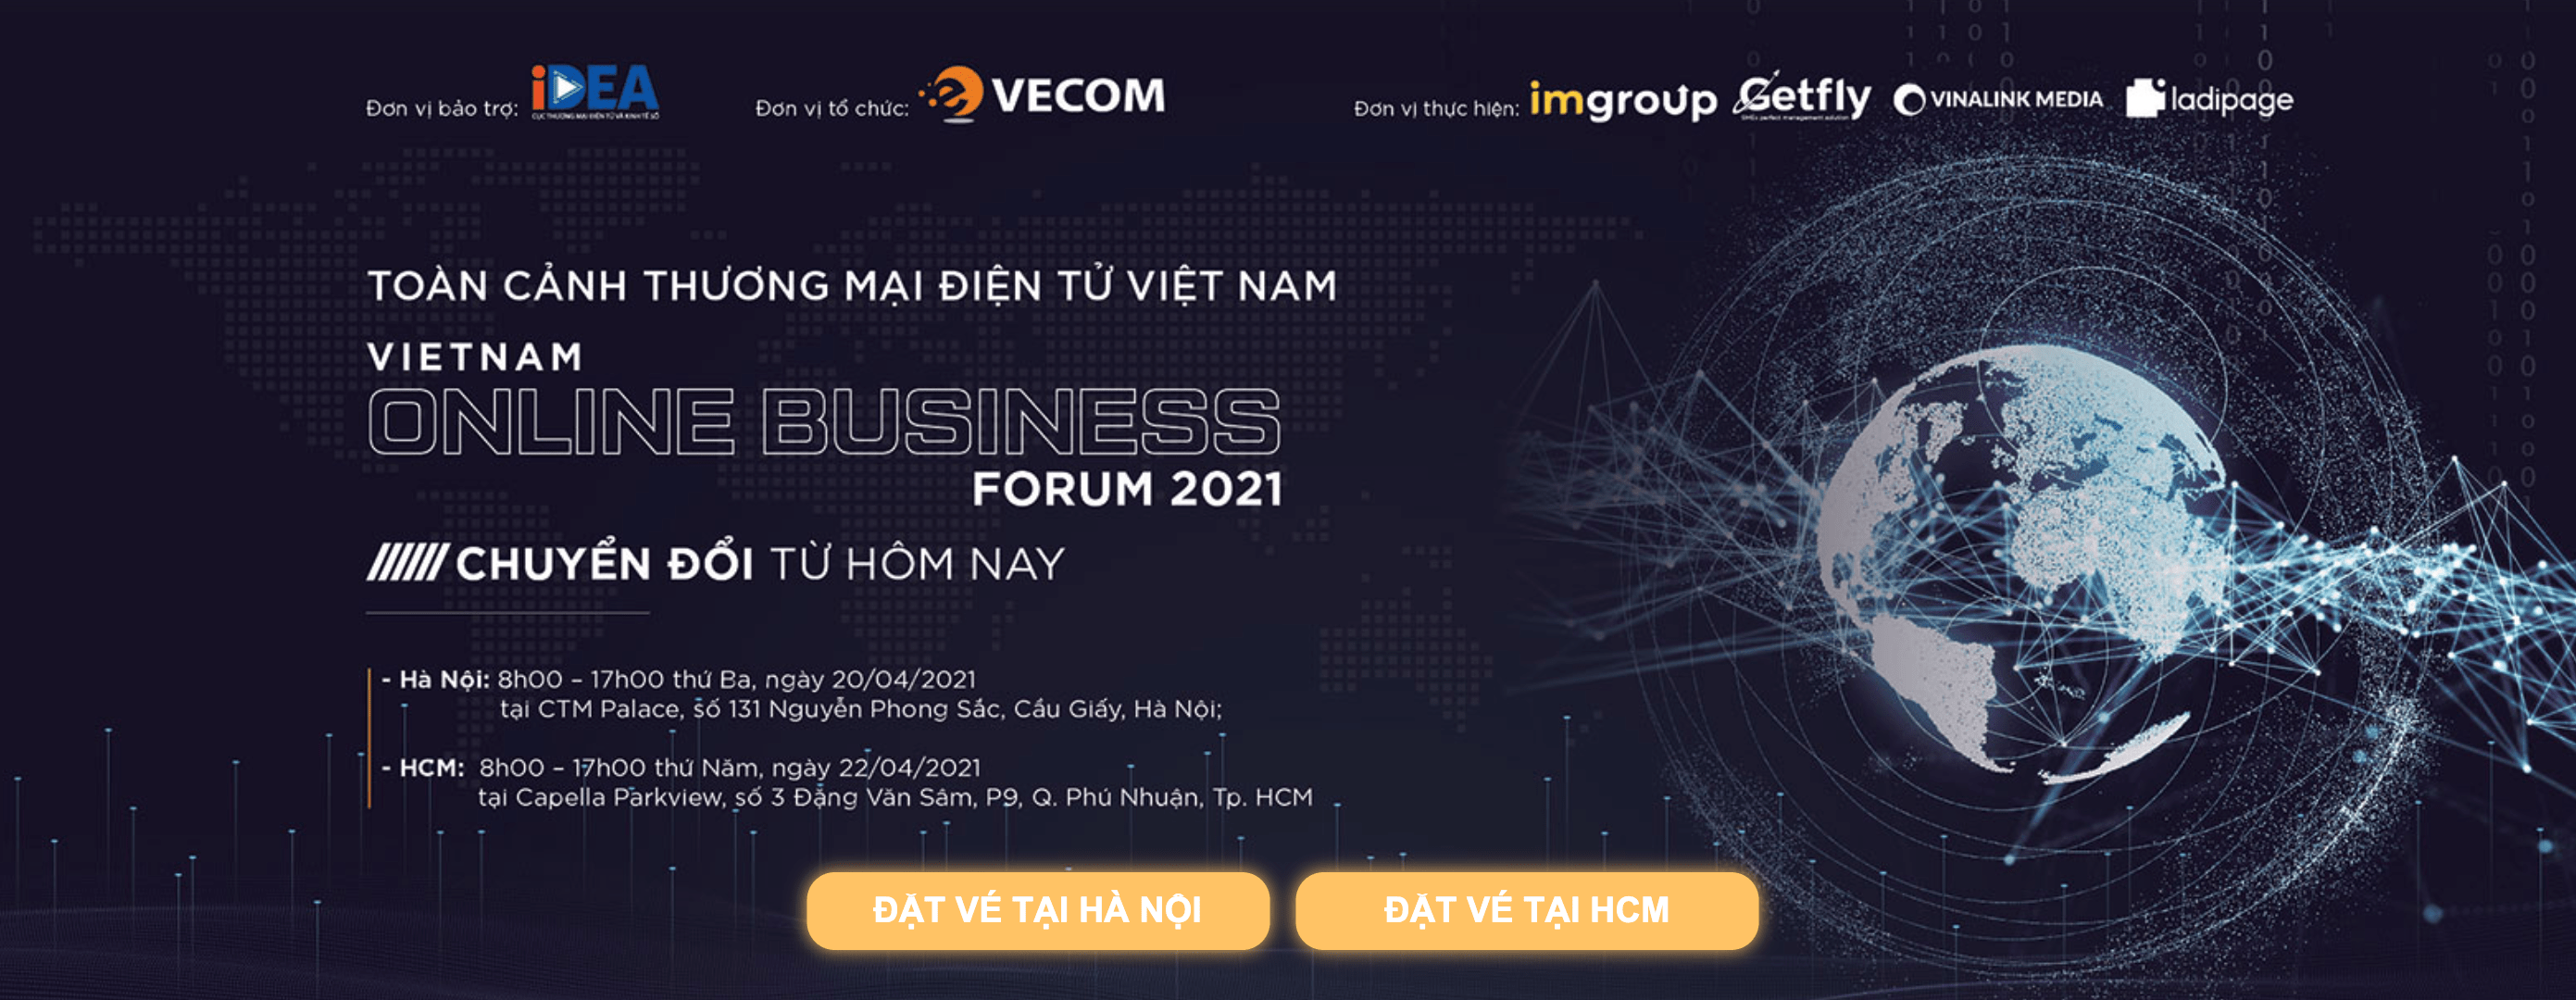 SỰ KIỆN VOBF 2021: Diễn đàn Toàn cảnh thương mại điện tử Việt Nam với Chủ đề: “Chuyển đổi từ hôm nay”